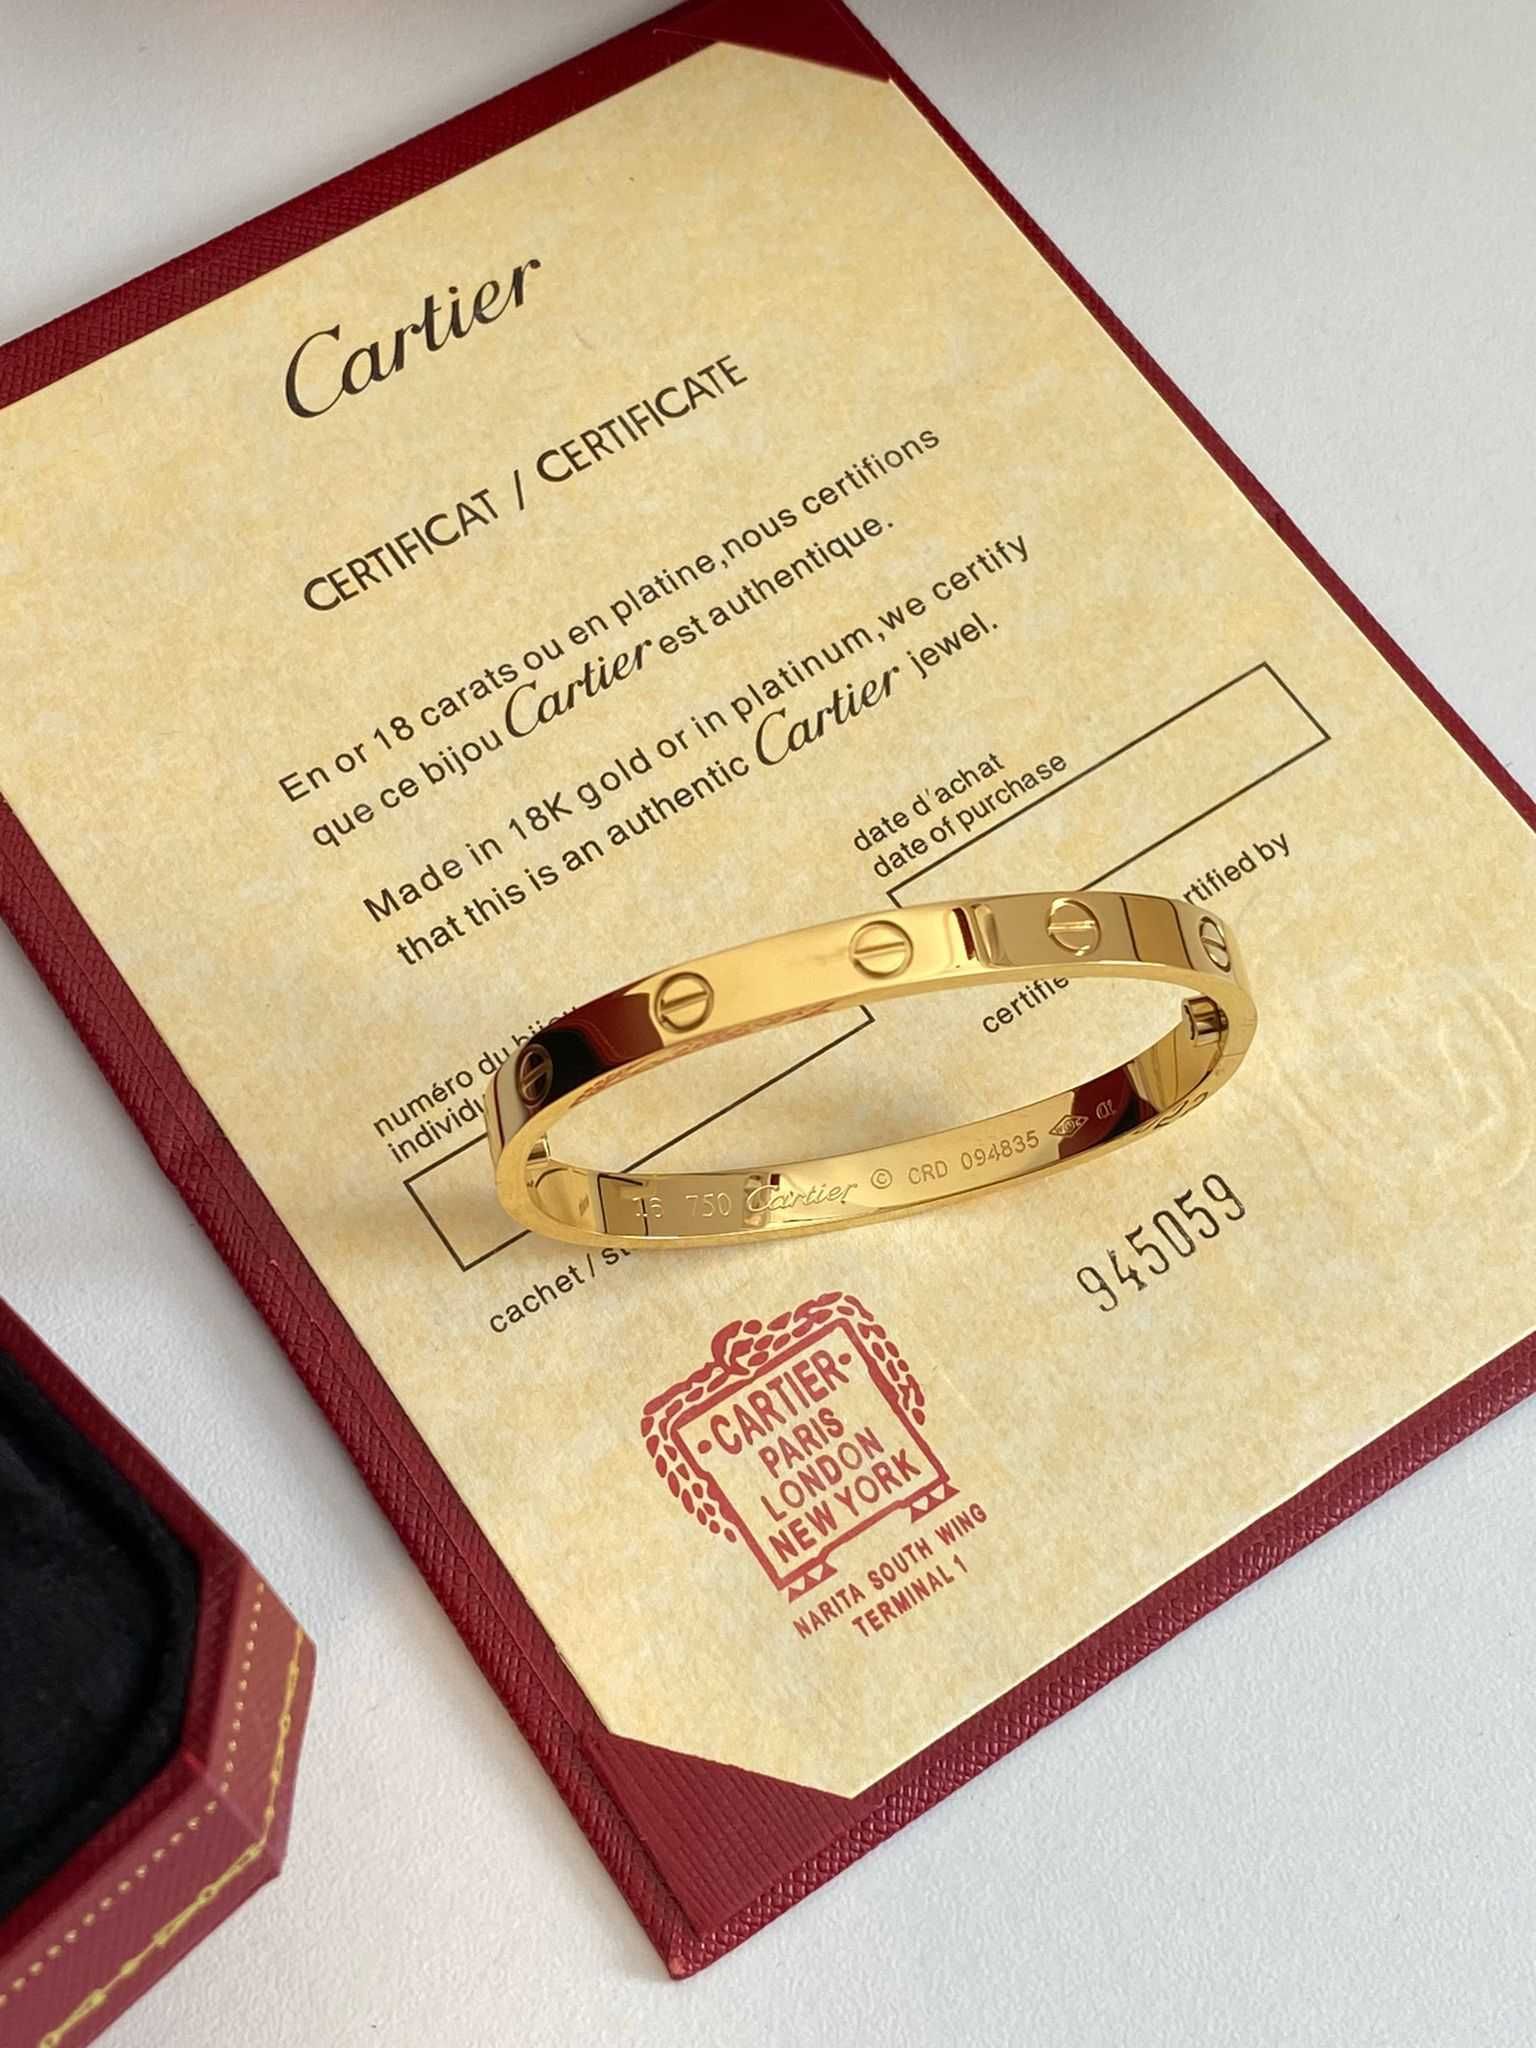 Brățară Cartier LOVE 19 Gold 24K cu cutie